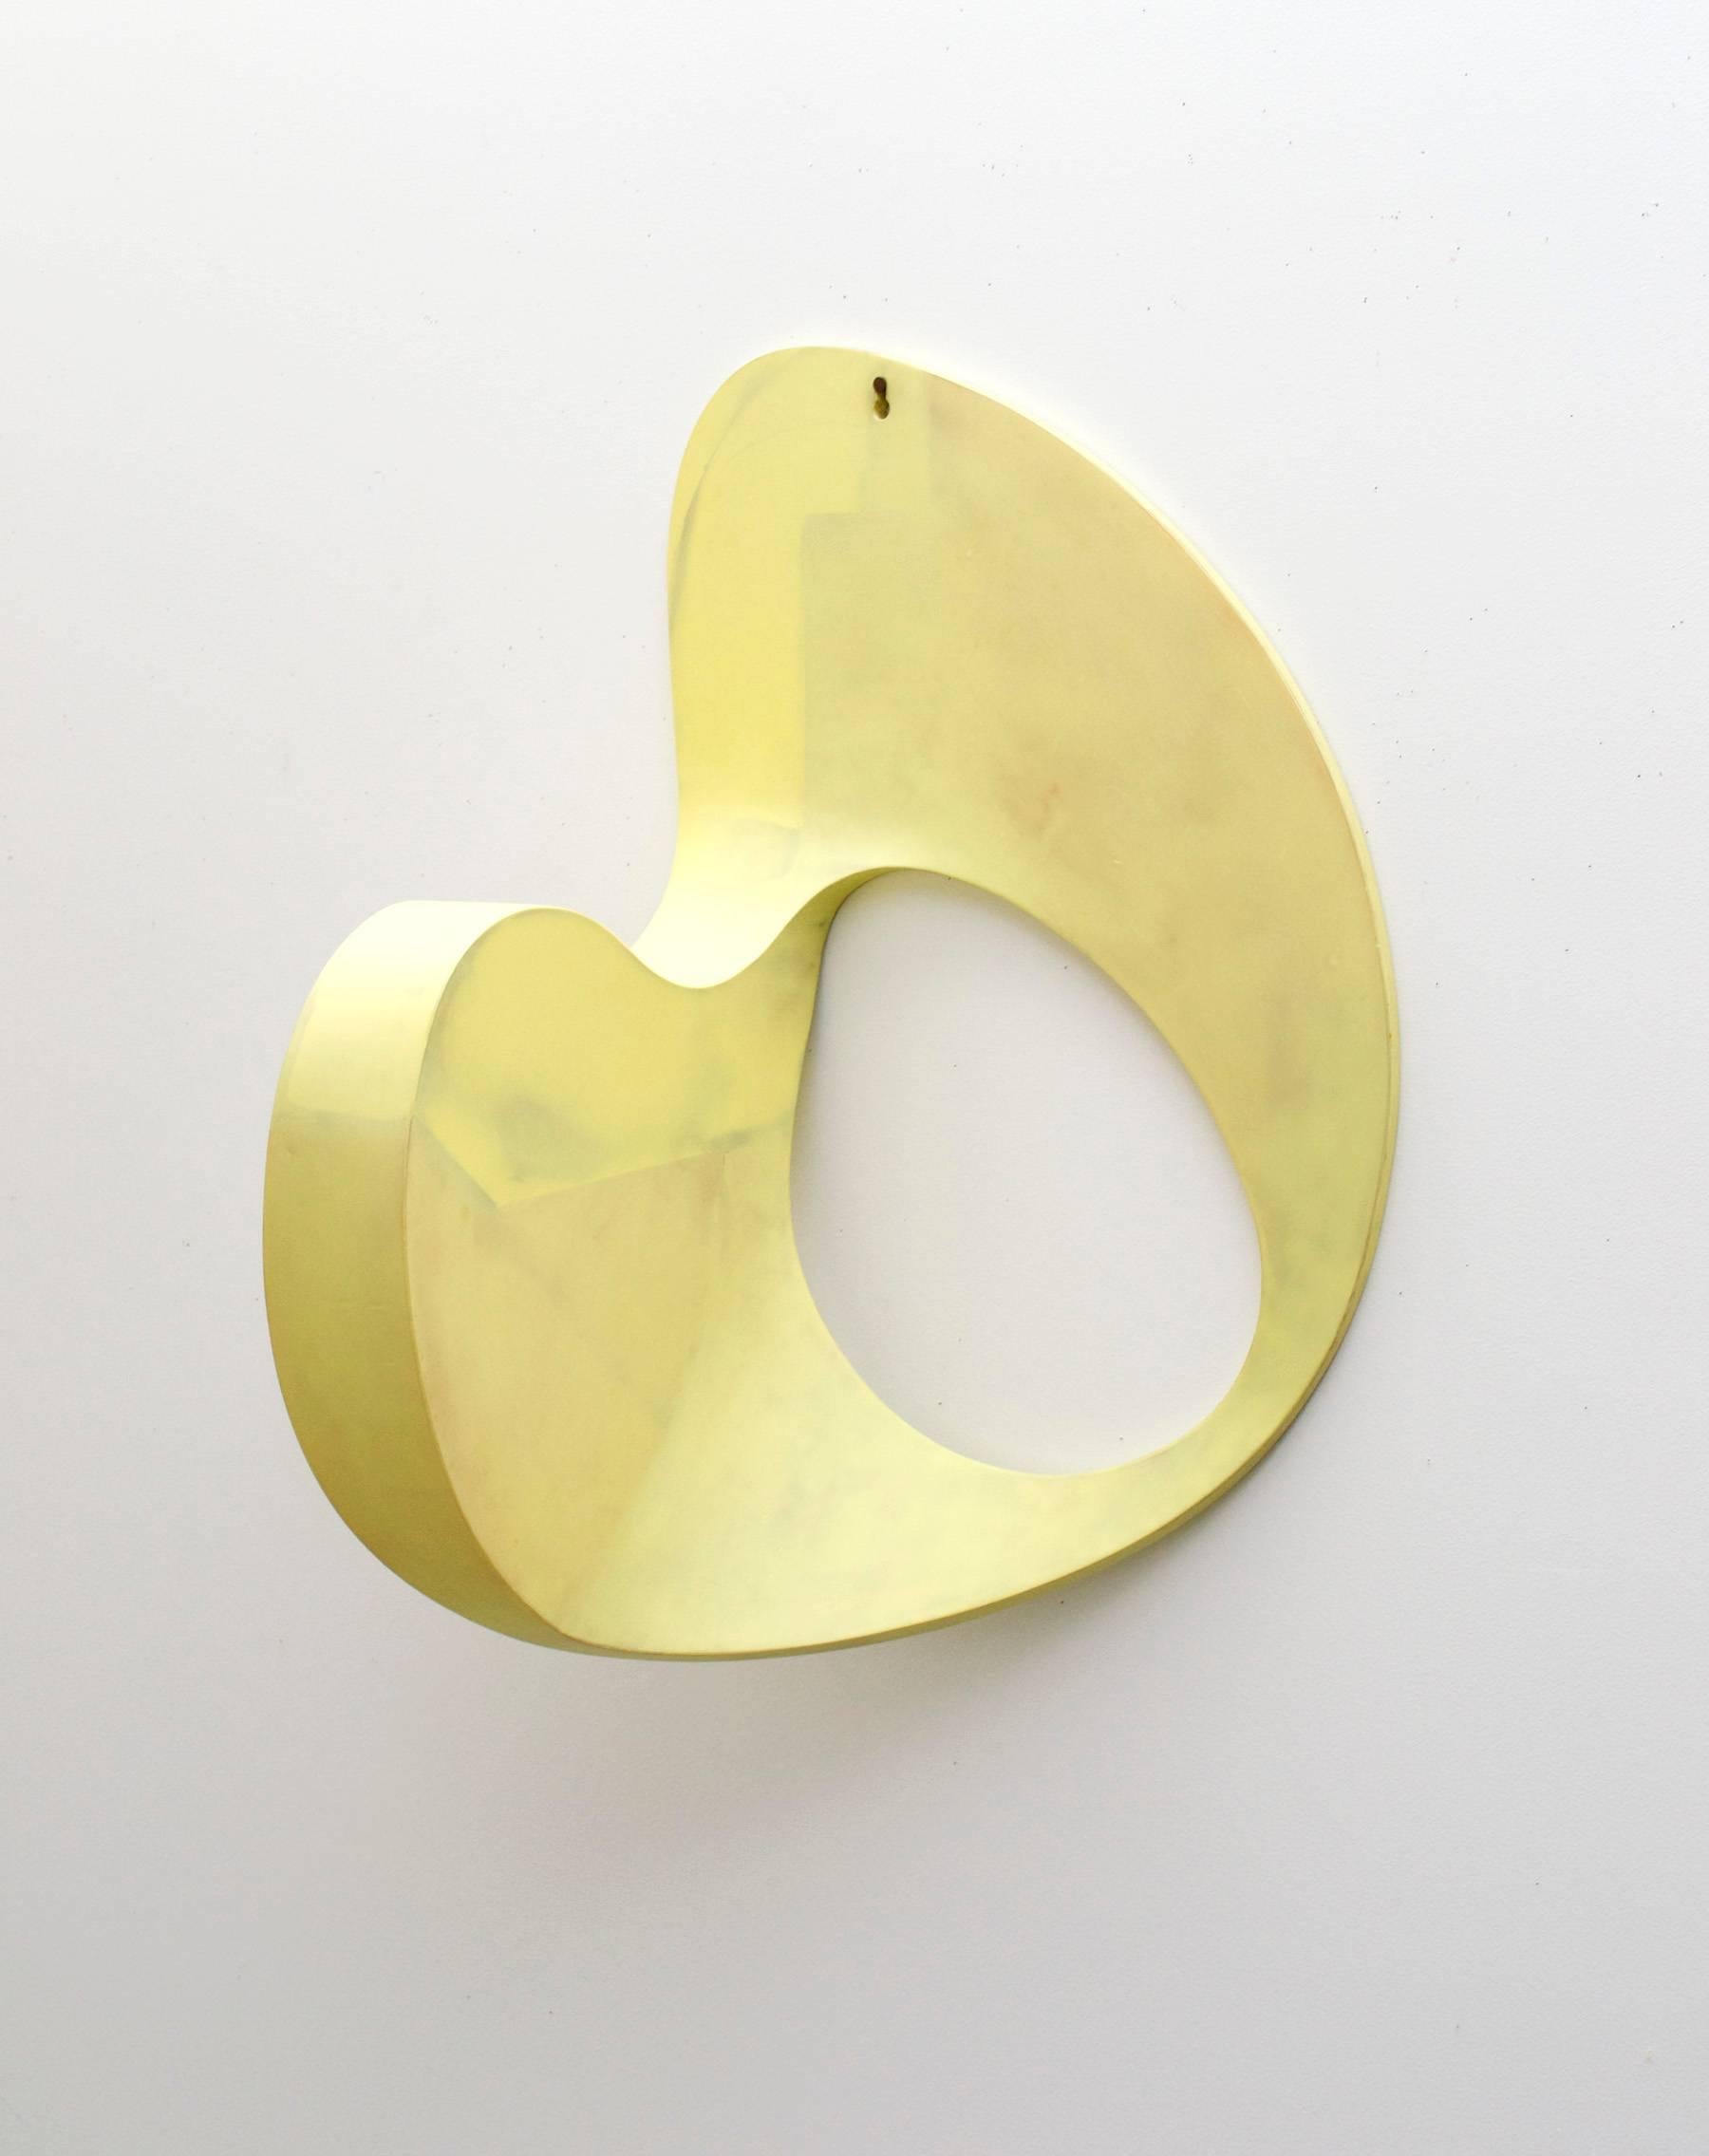 Garth Evans Abstract Sculpture - Mirror, Mirror